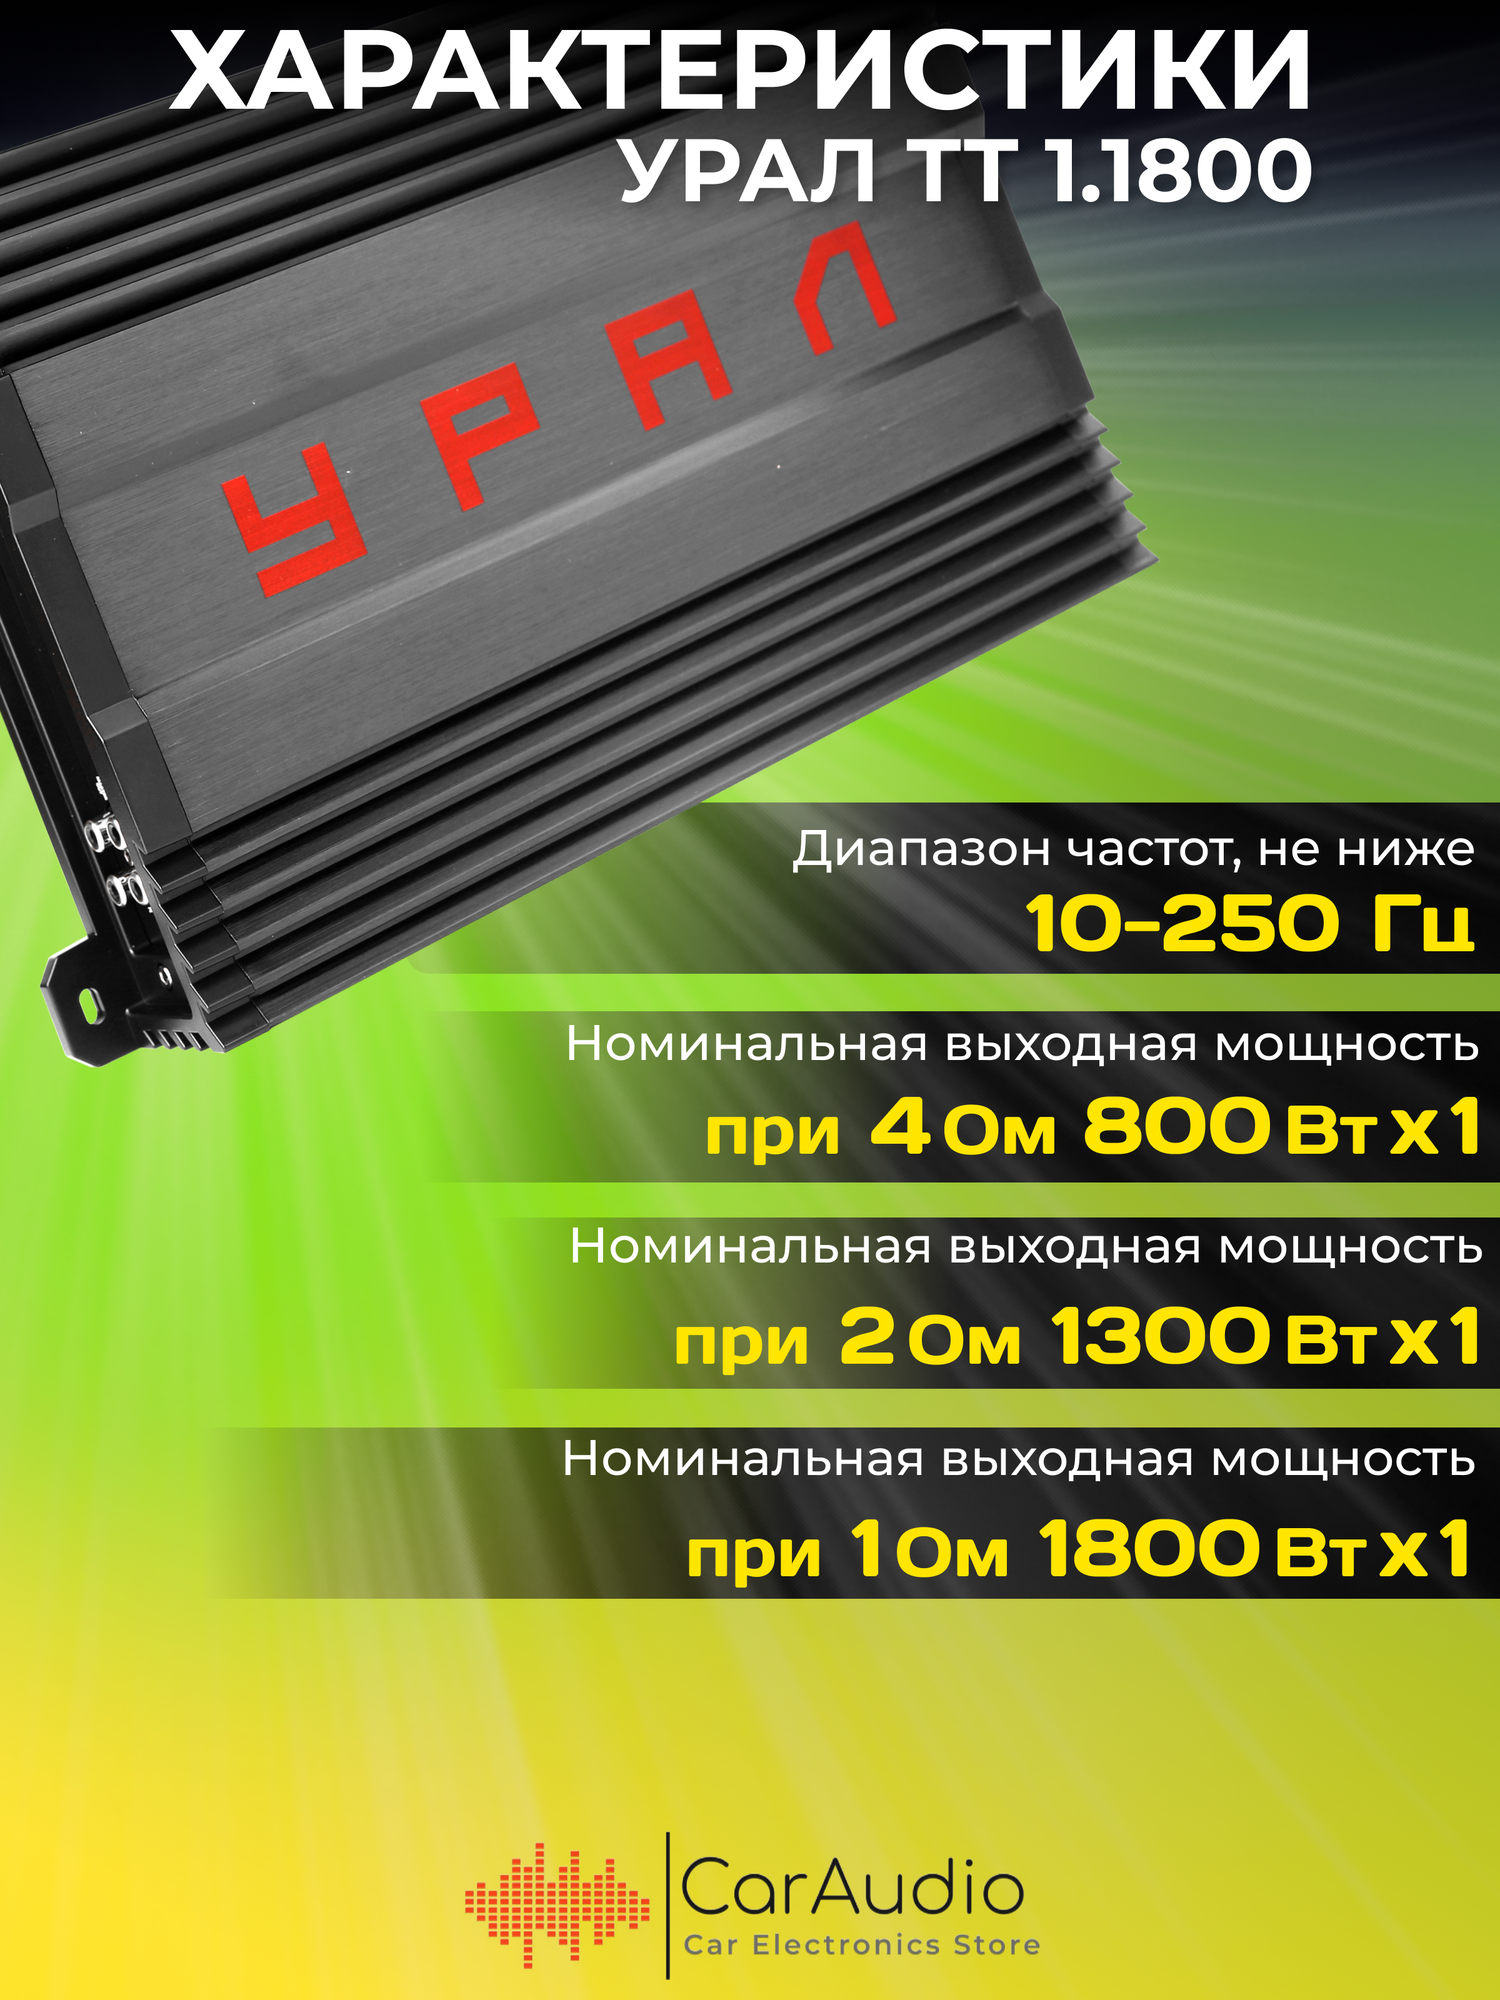 Усилитель автомобильный Ural ТТ 1.1800 одноканальный - фото №3